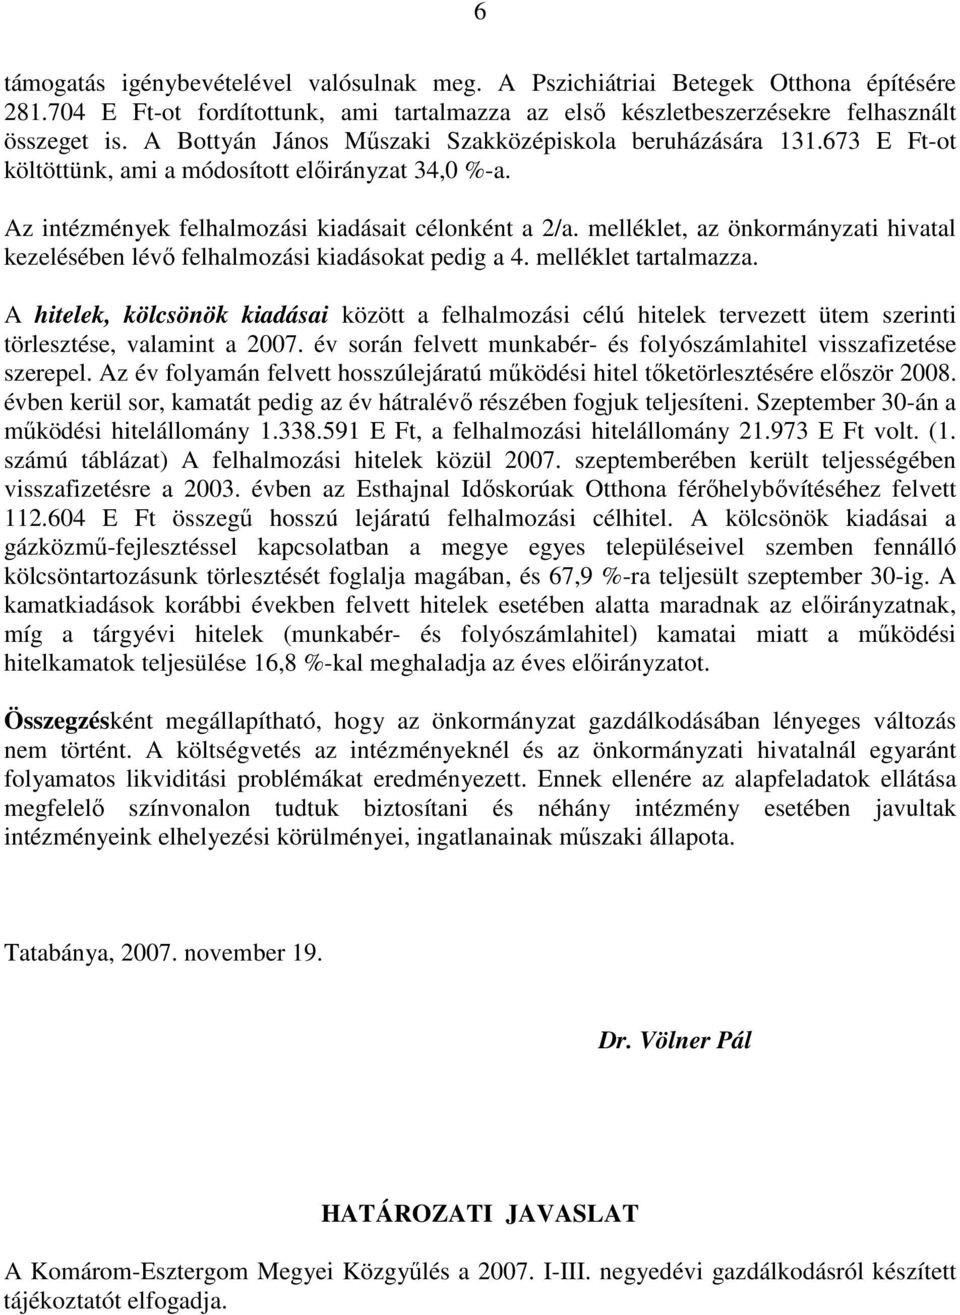 melléklet, az önkormányzati hivatal kezelésében lévı felhalmozási kiadásokat pedig a 4. melléklet tartalmazza.